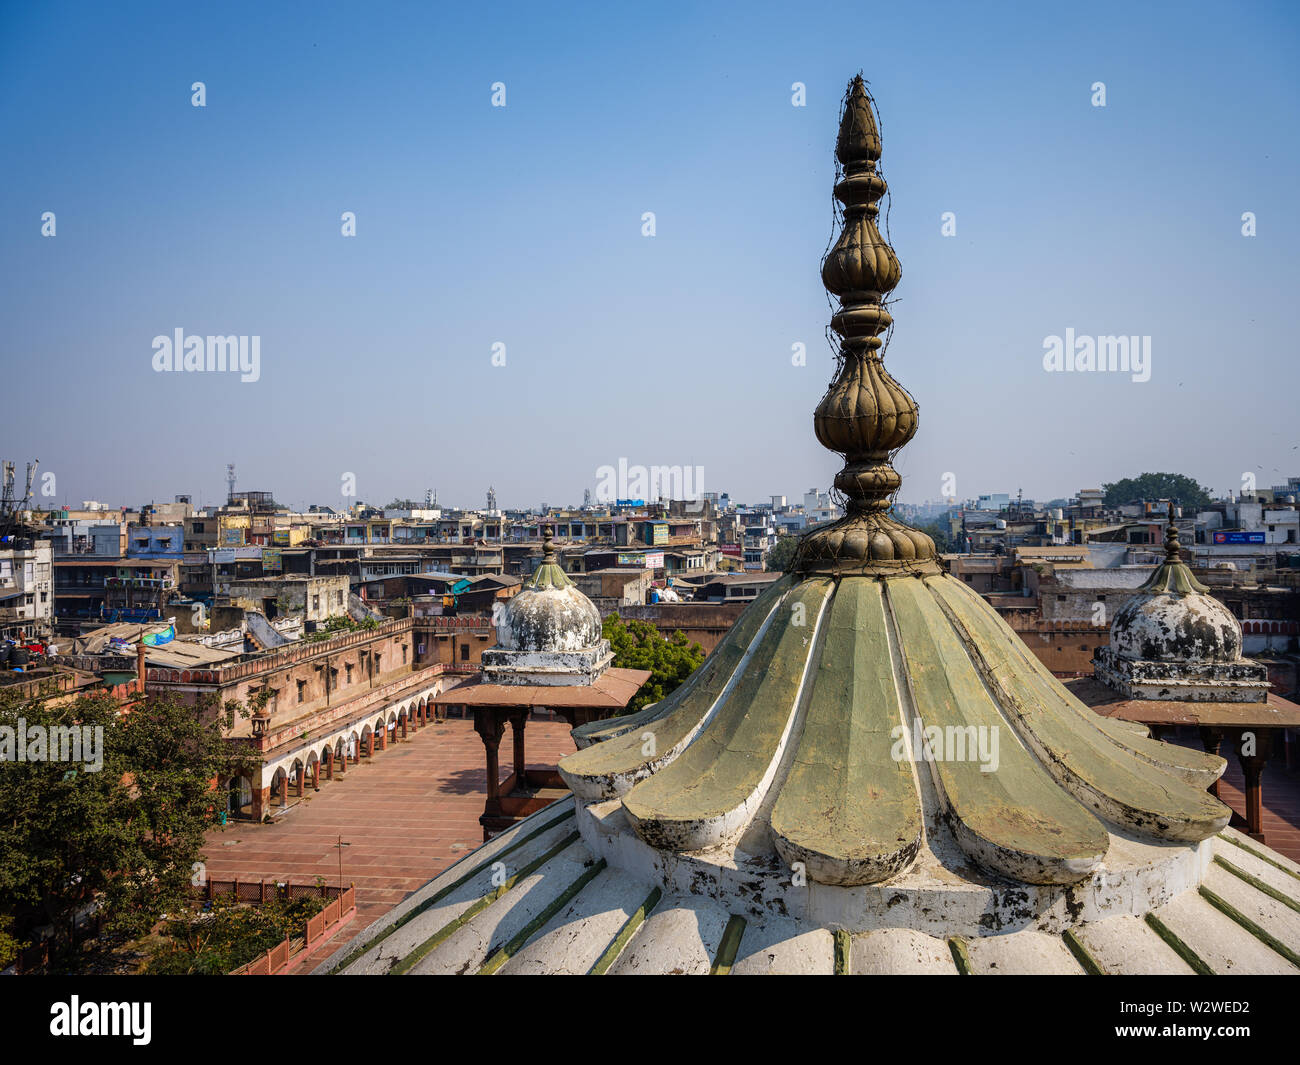 NEW DELHI, India - CIRCA NOVEMBRE 2018: Vista di Delhi come visto dal tetto della Gadodia Spice Market nella vecchia Delhi. Questo mercato è pieno di negozi Foto Stock